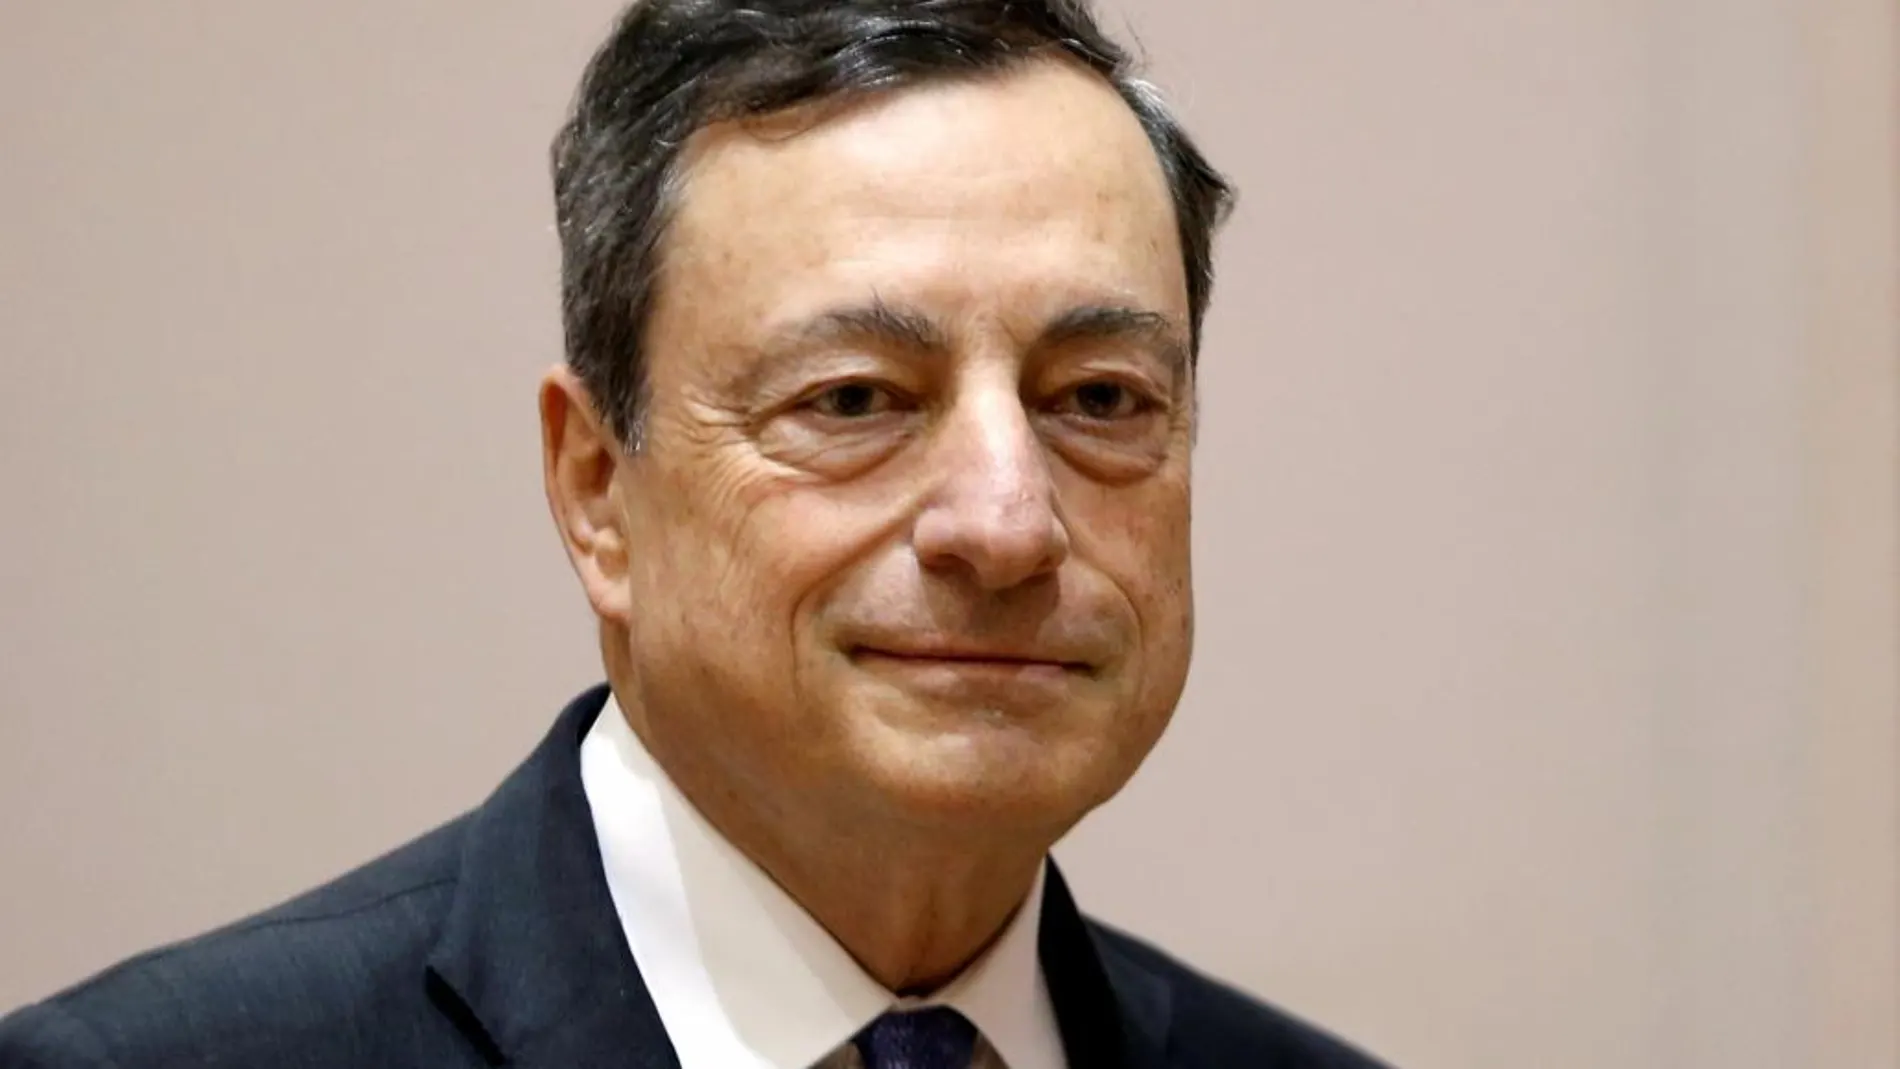 Draghi asegura que es mejor financiar la economía real a través de varios canales